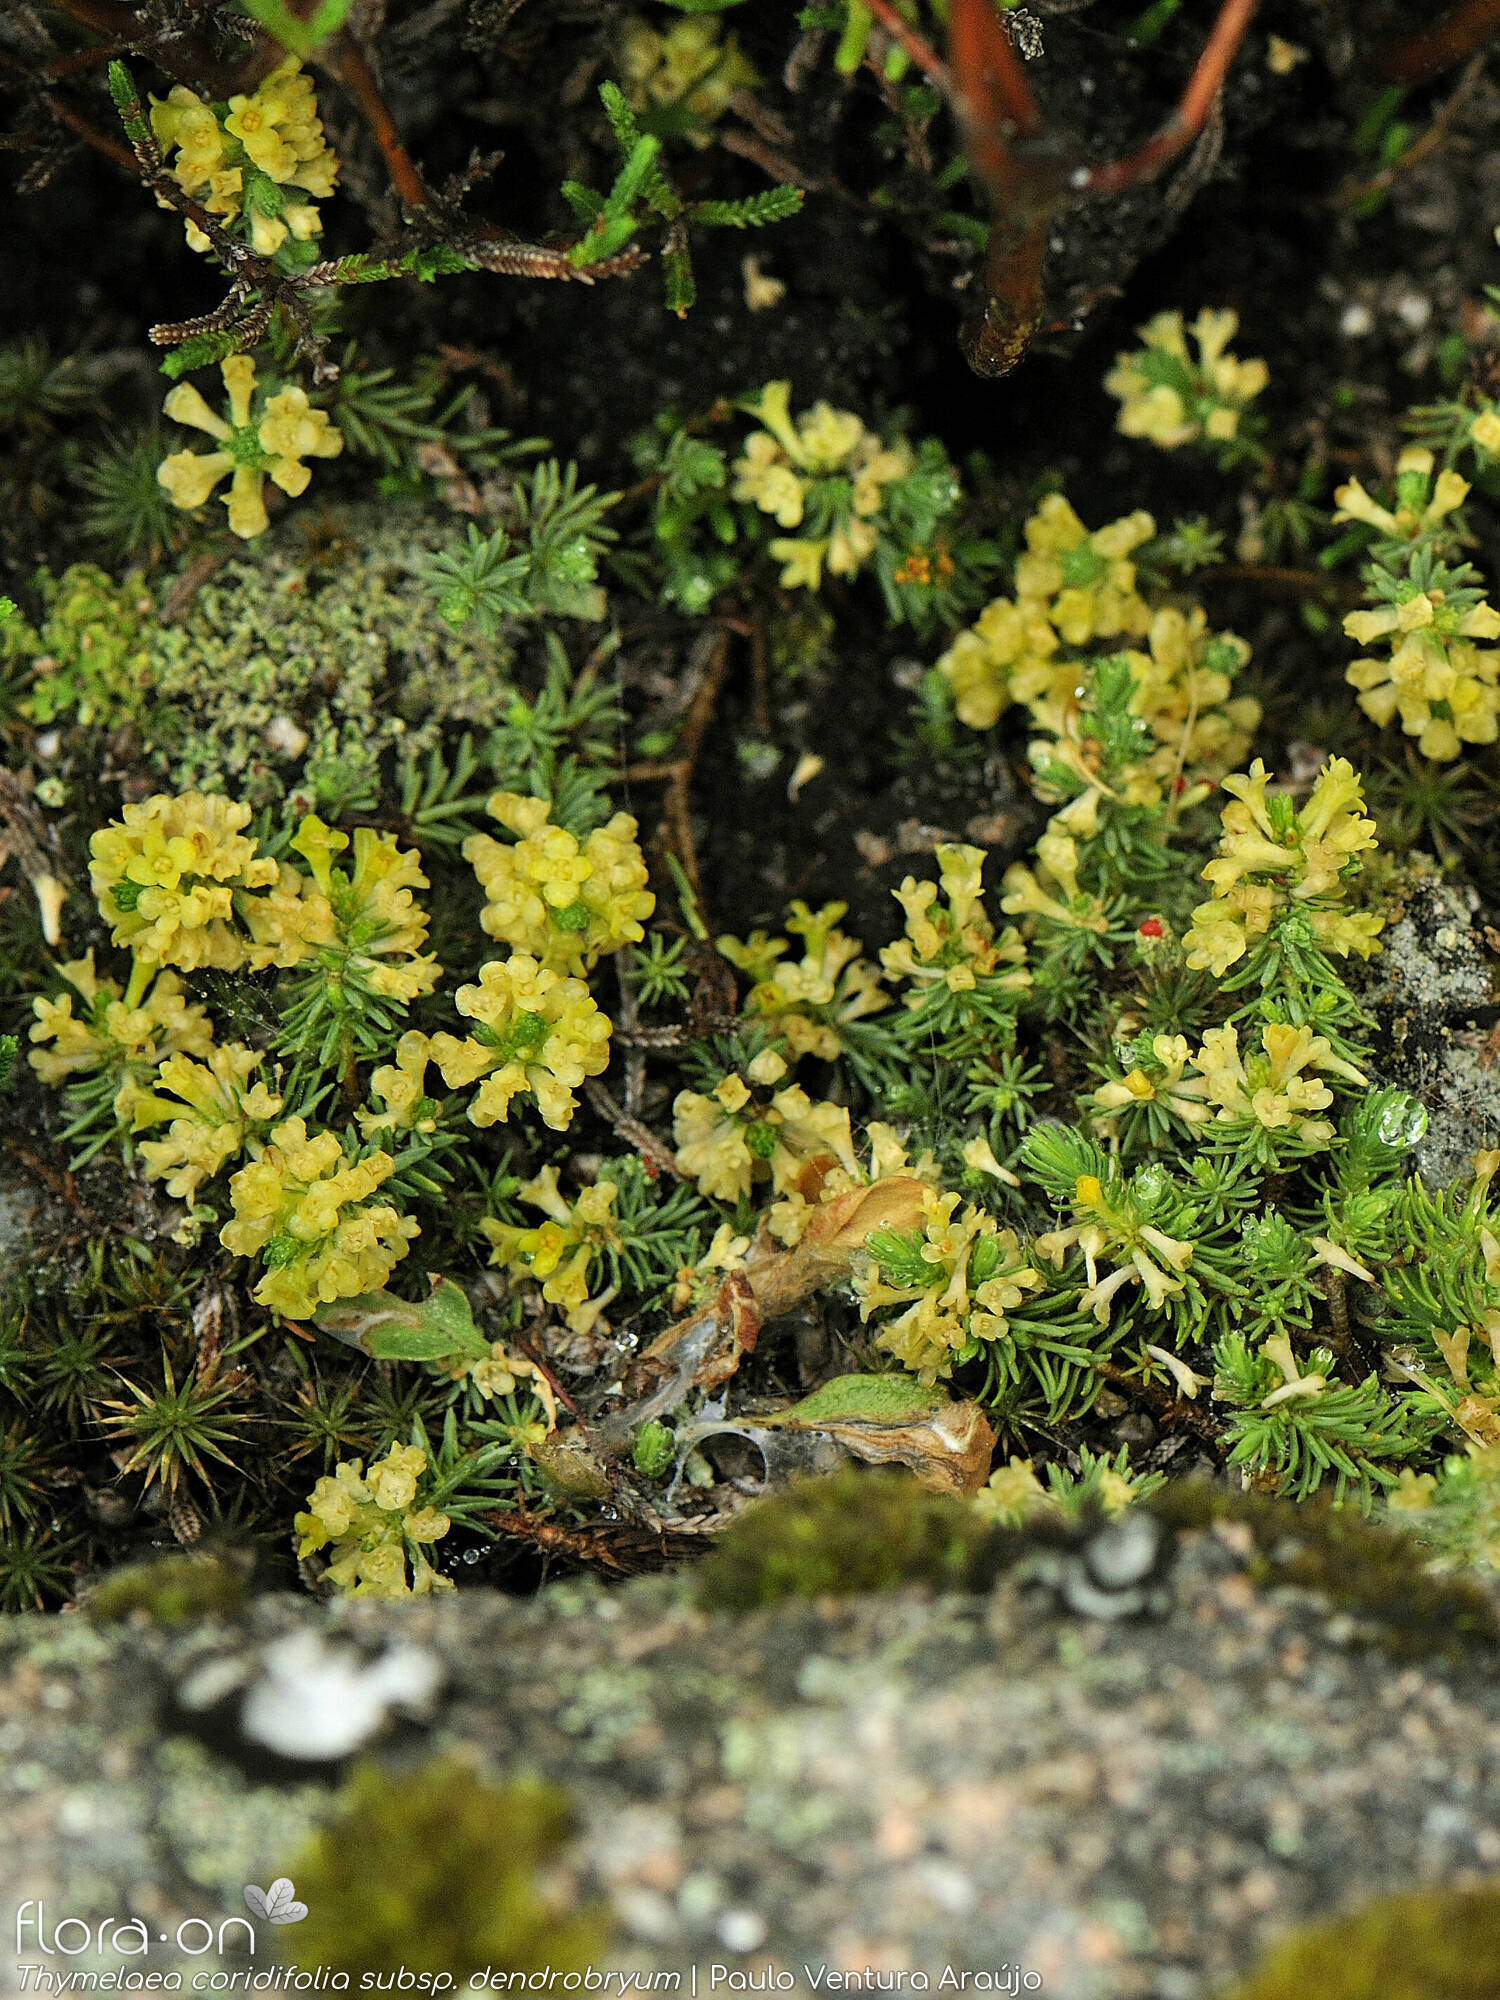 Thymelaea coridifolia dendrobryum - Hábito | Paulo Ventura Araújo; CC BY-NC 4.0